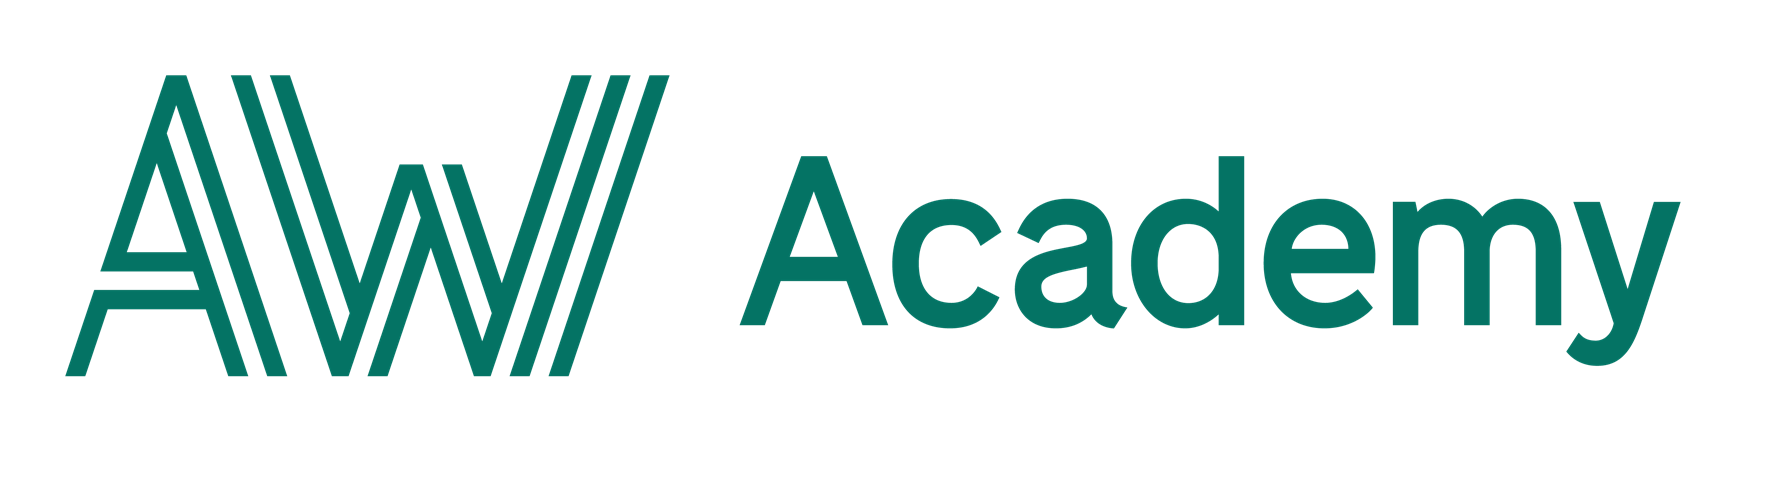 Lär dig Java via AW Academy och starta din nya karriär inom IT-branschen